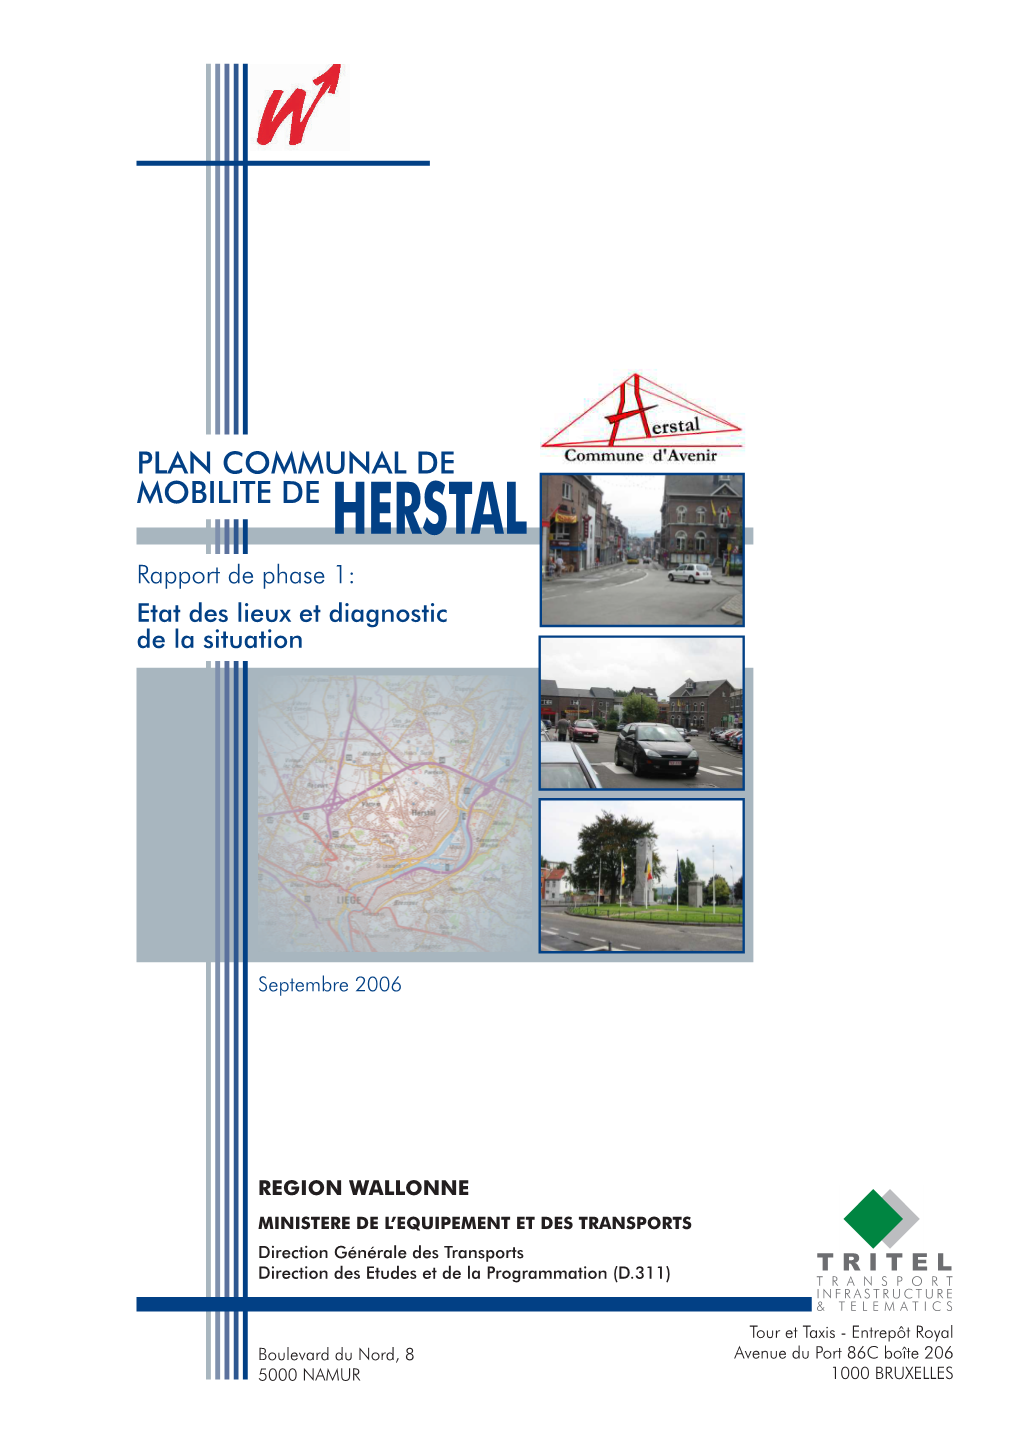 PLAN COMMUNAL DE MOBILITE DE HERSTAL Rapport De Phase 1: Etat Des Lieux Et Diagnostic De La Situation